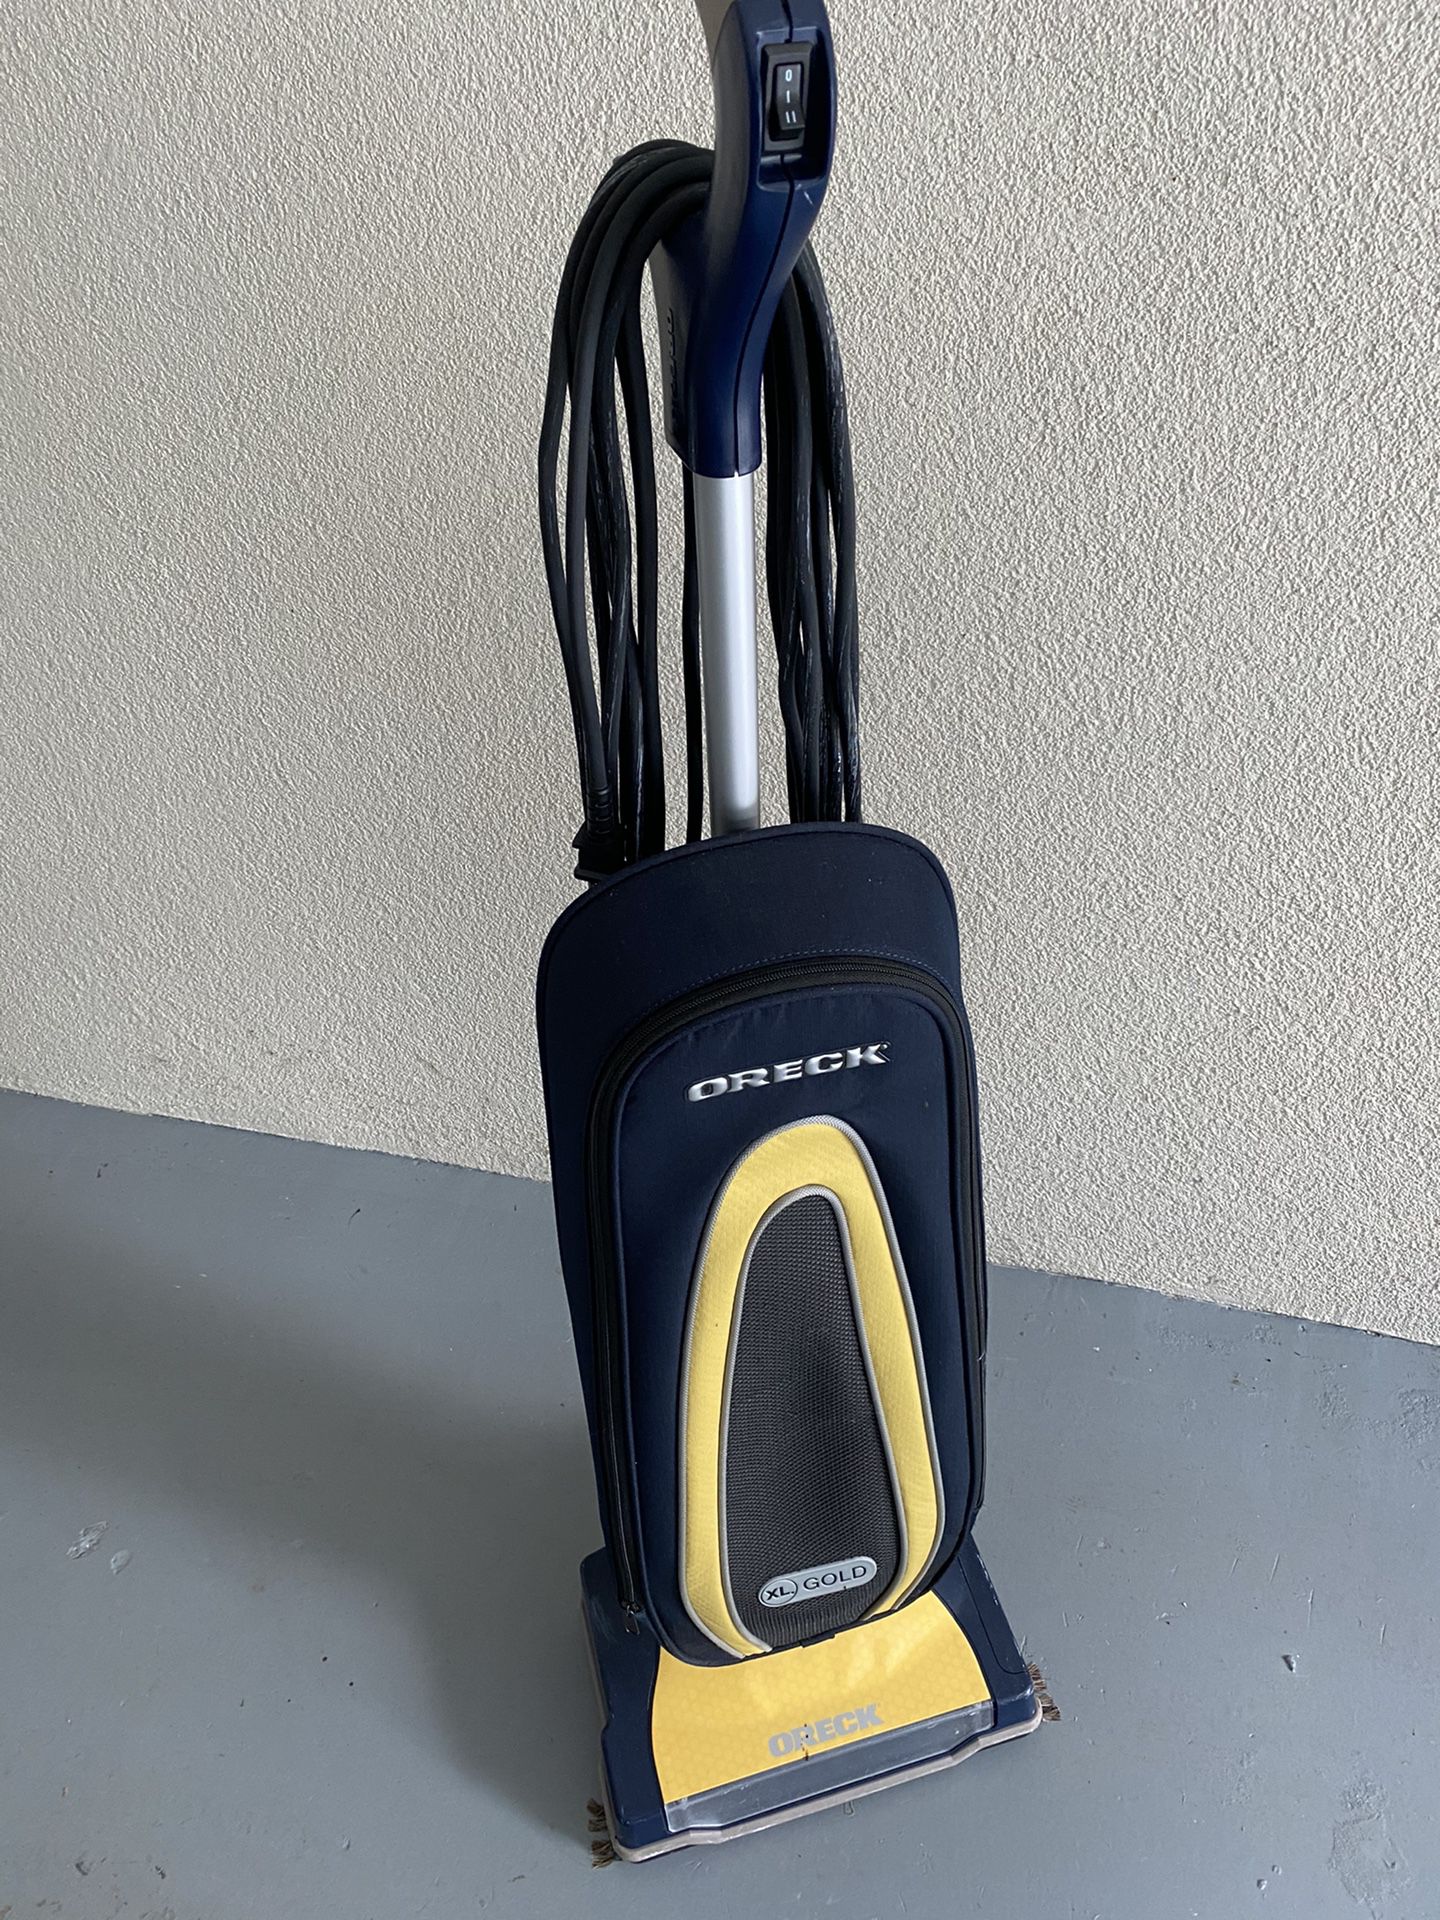 Oreck Gold XL Vacuum